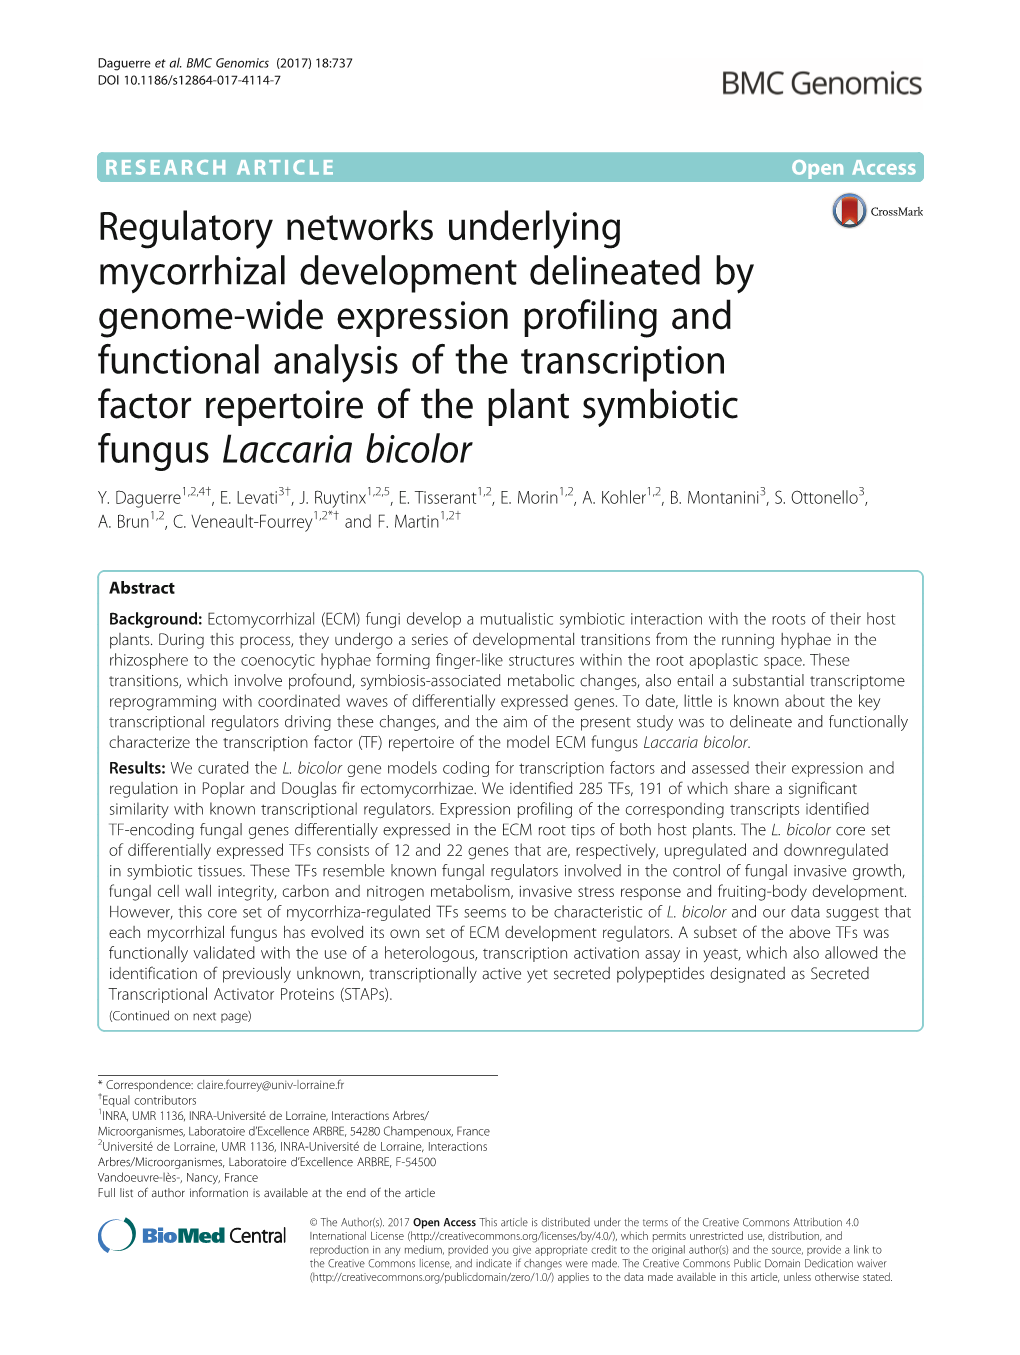 Regulatory Networks Underlying Mycorrhizal Development